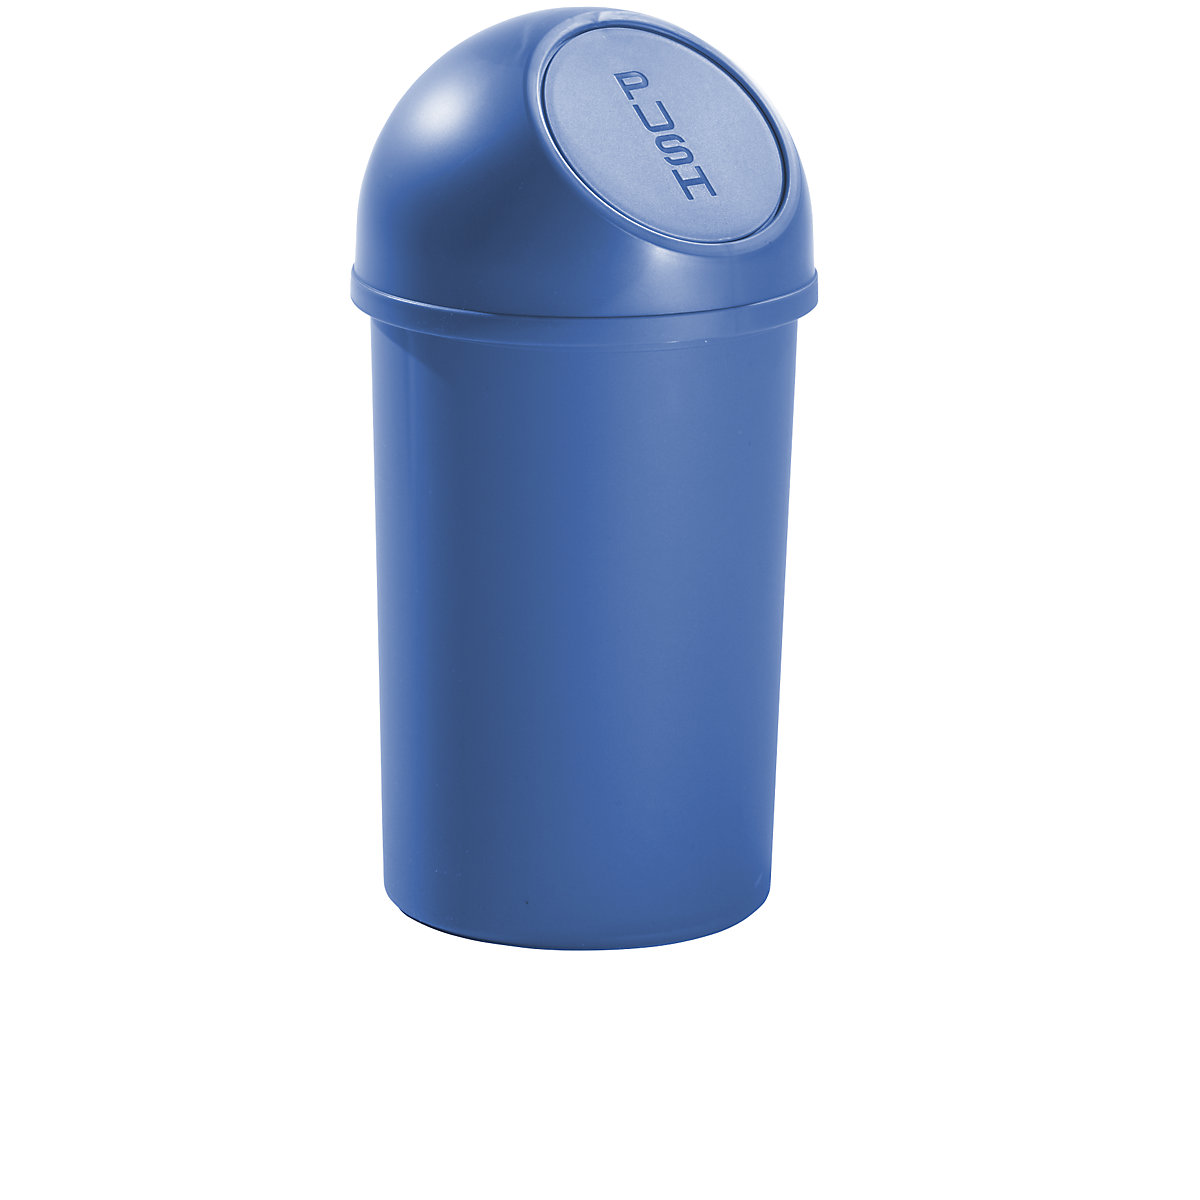 Plastični spremnik za otpad s otvaranjem na pritisak – helit, volumen 13 l, VxØ 490 x 252 mm, u plavoj boji, pak. 6 kom.-3